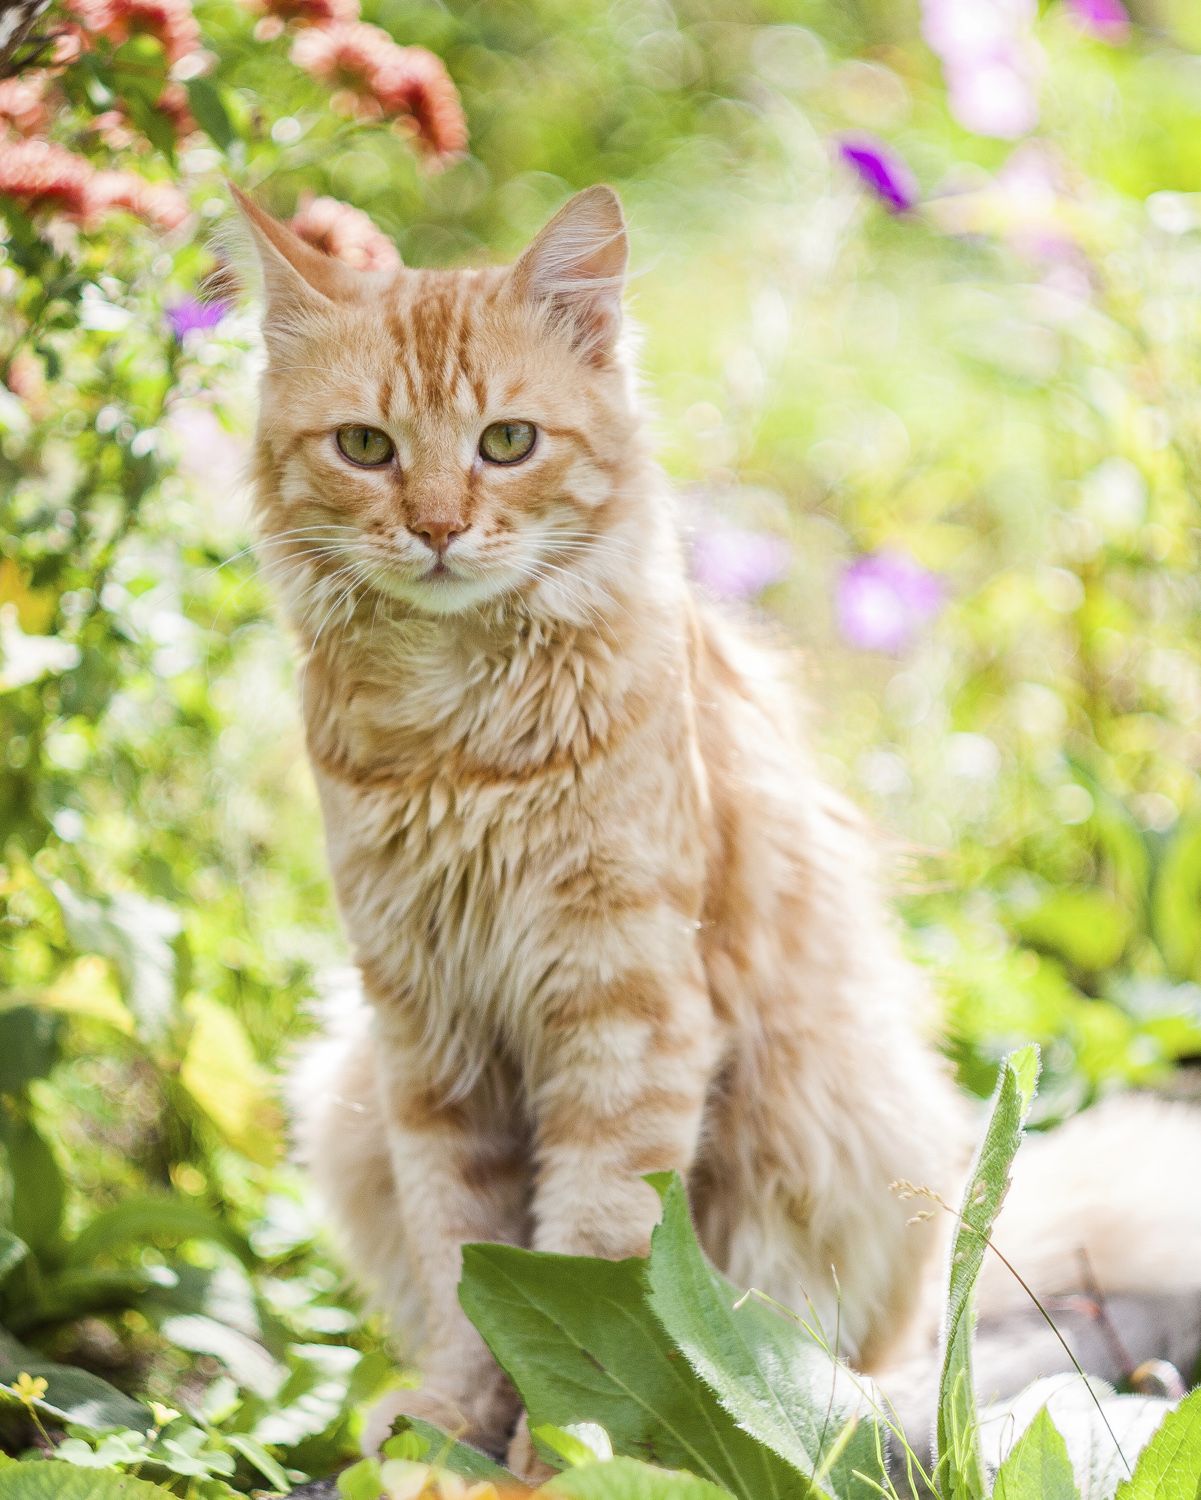 Unwelcome neighbourhood cat visiting a garden.